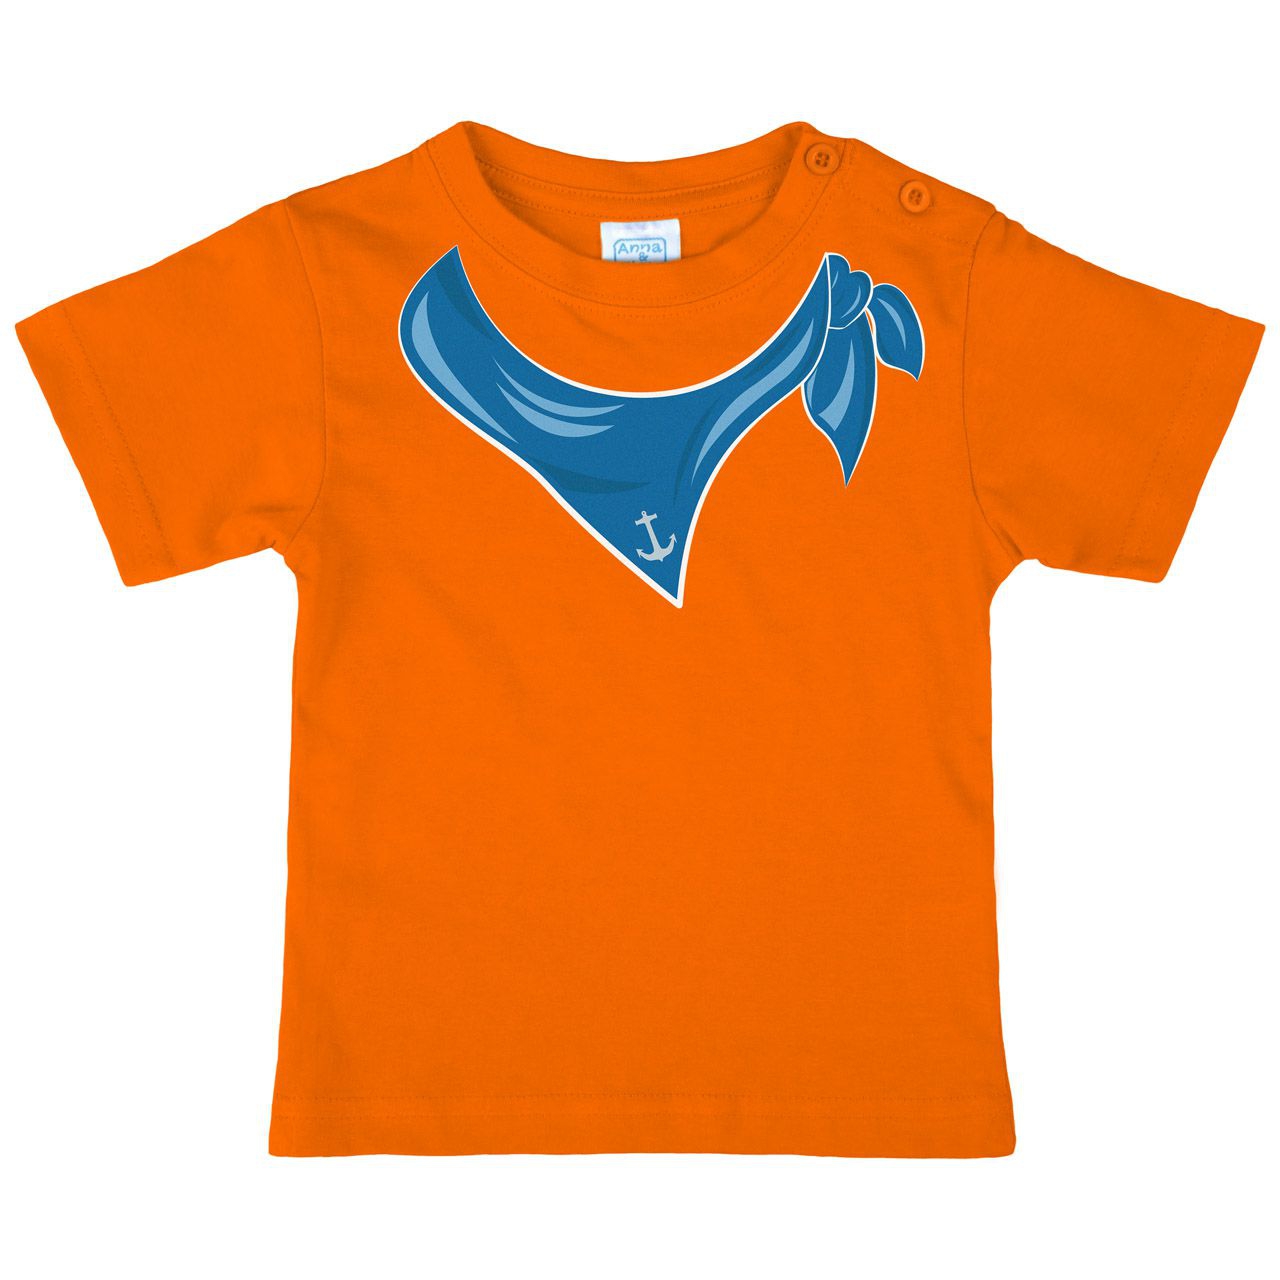 Halstuch Anker Junge Kinder T-Shirt orange 68 / 74